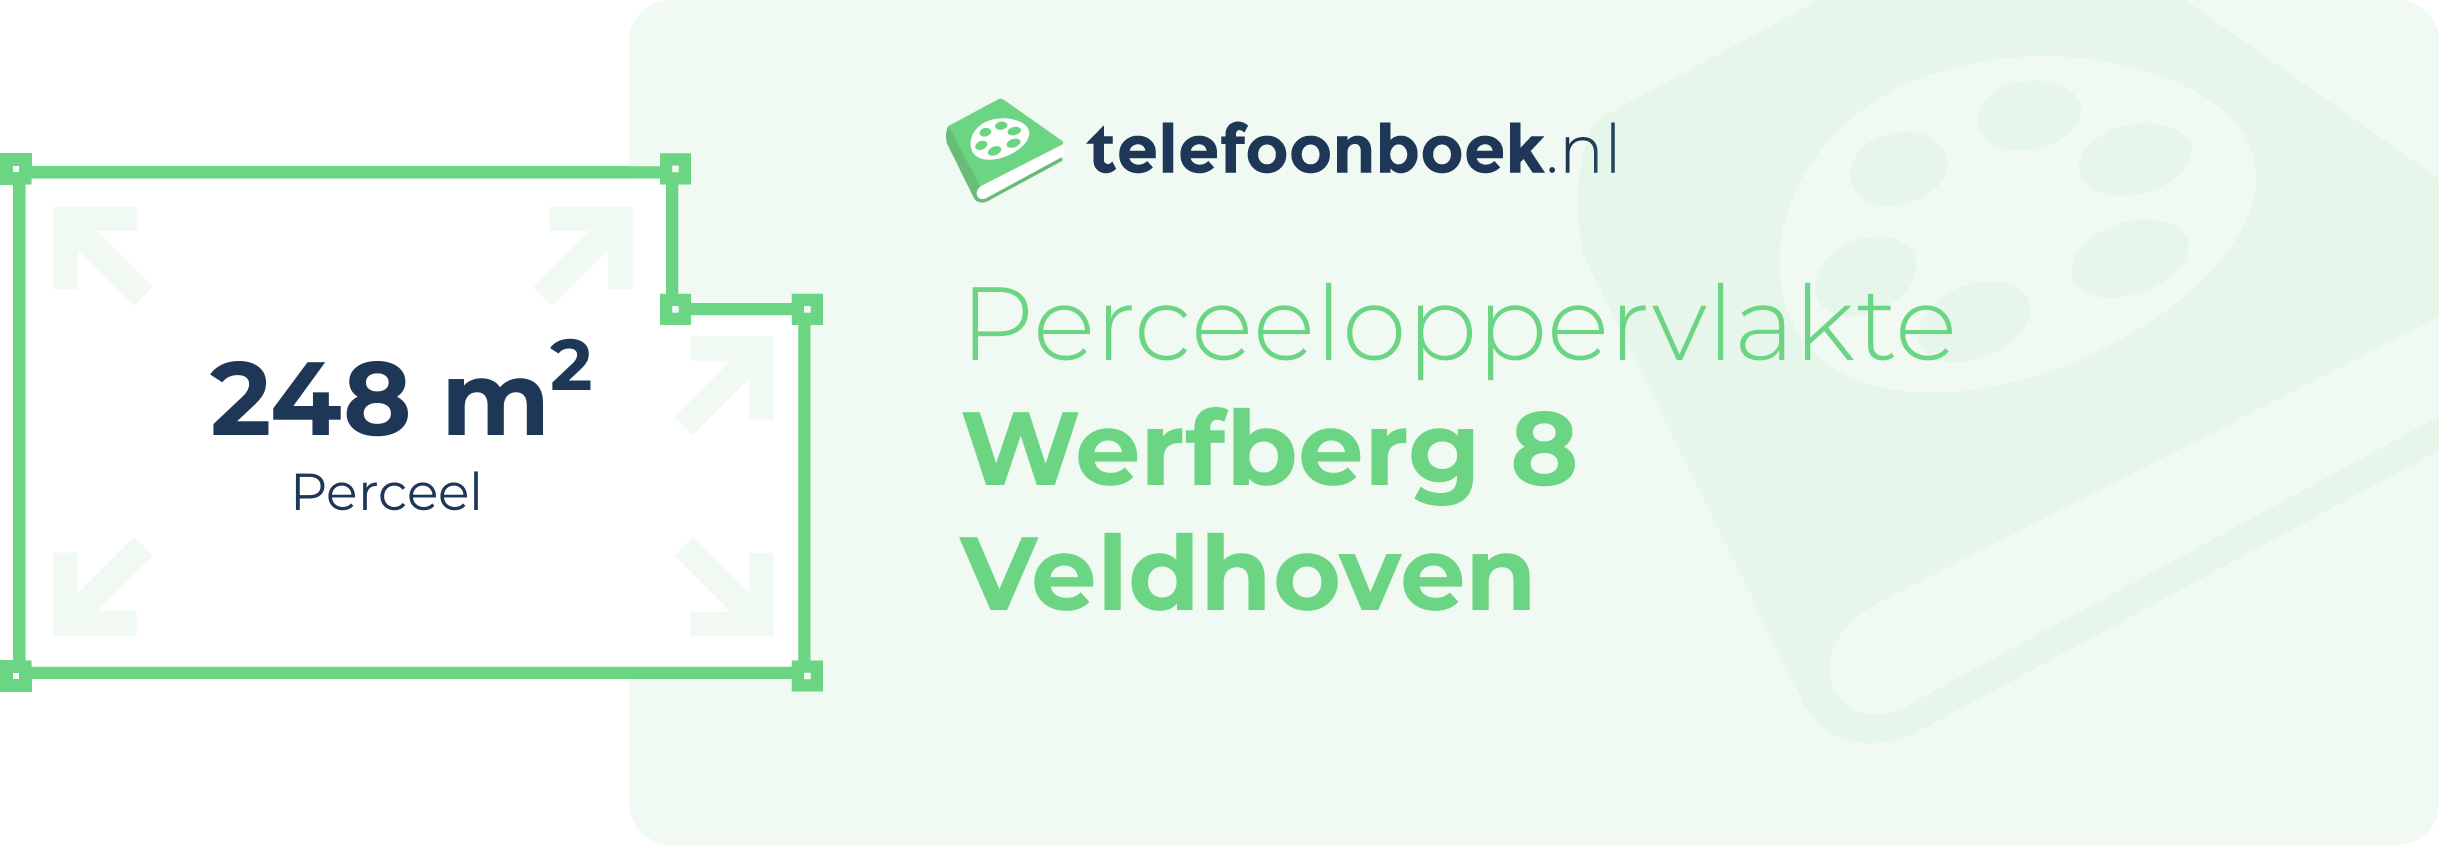 Perceeloppervlakte Werfberg 8 Veldhoven